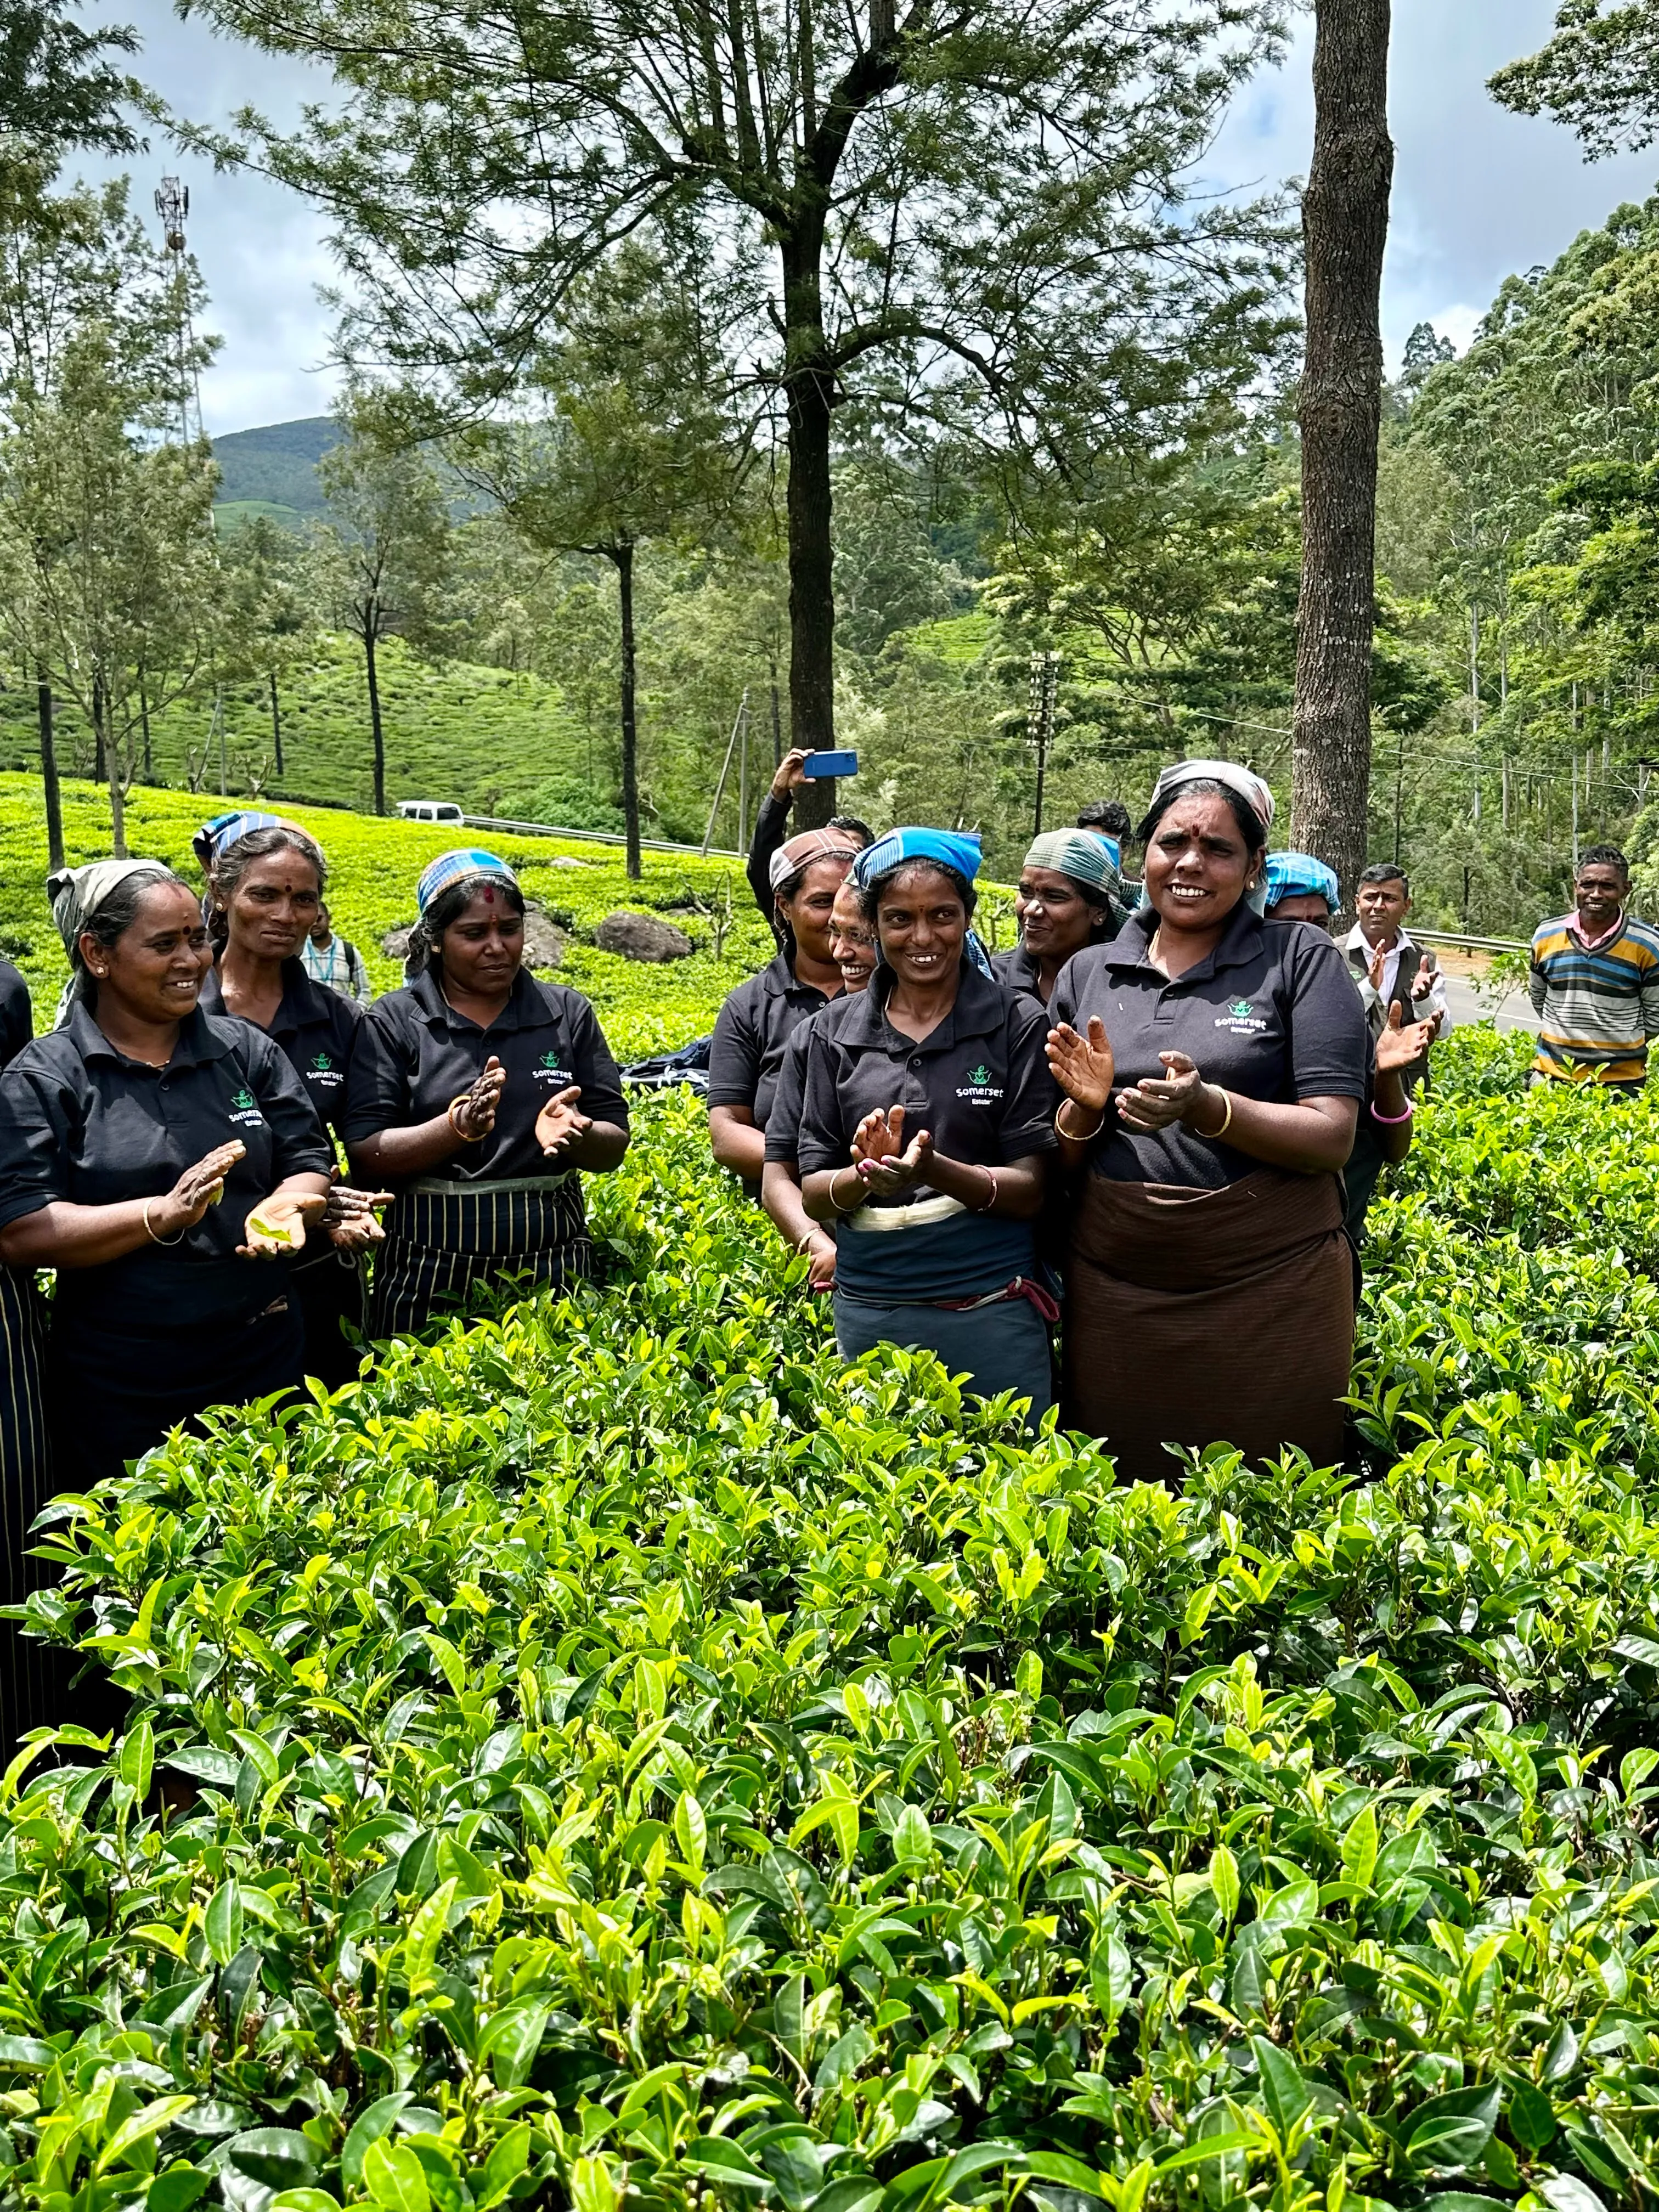 Tea pickers on a break, applauding in the tea field